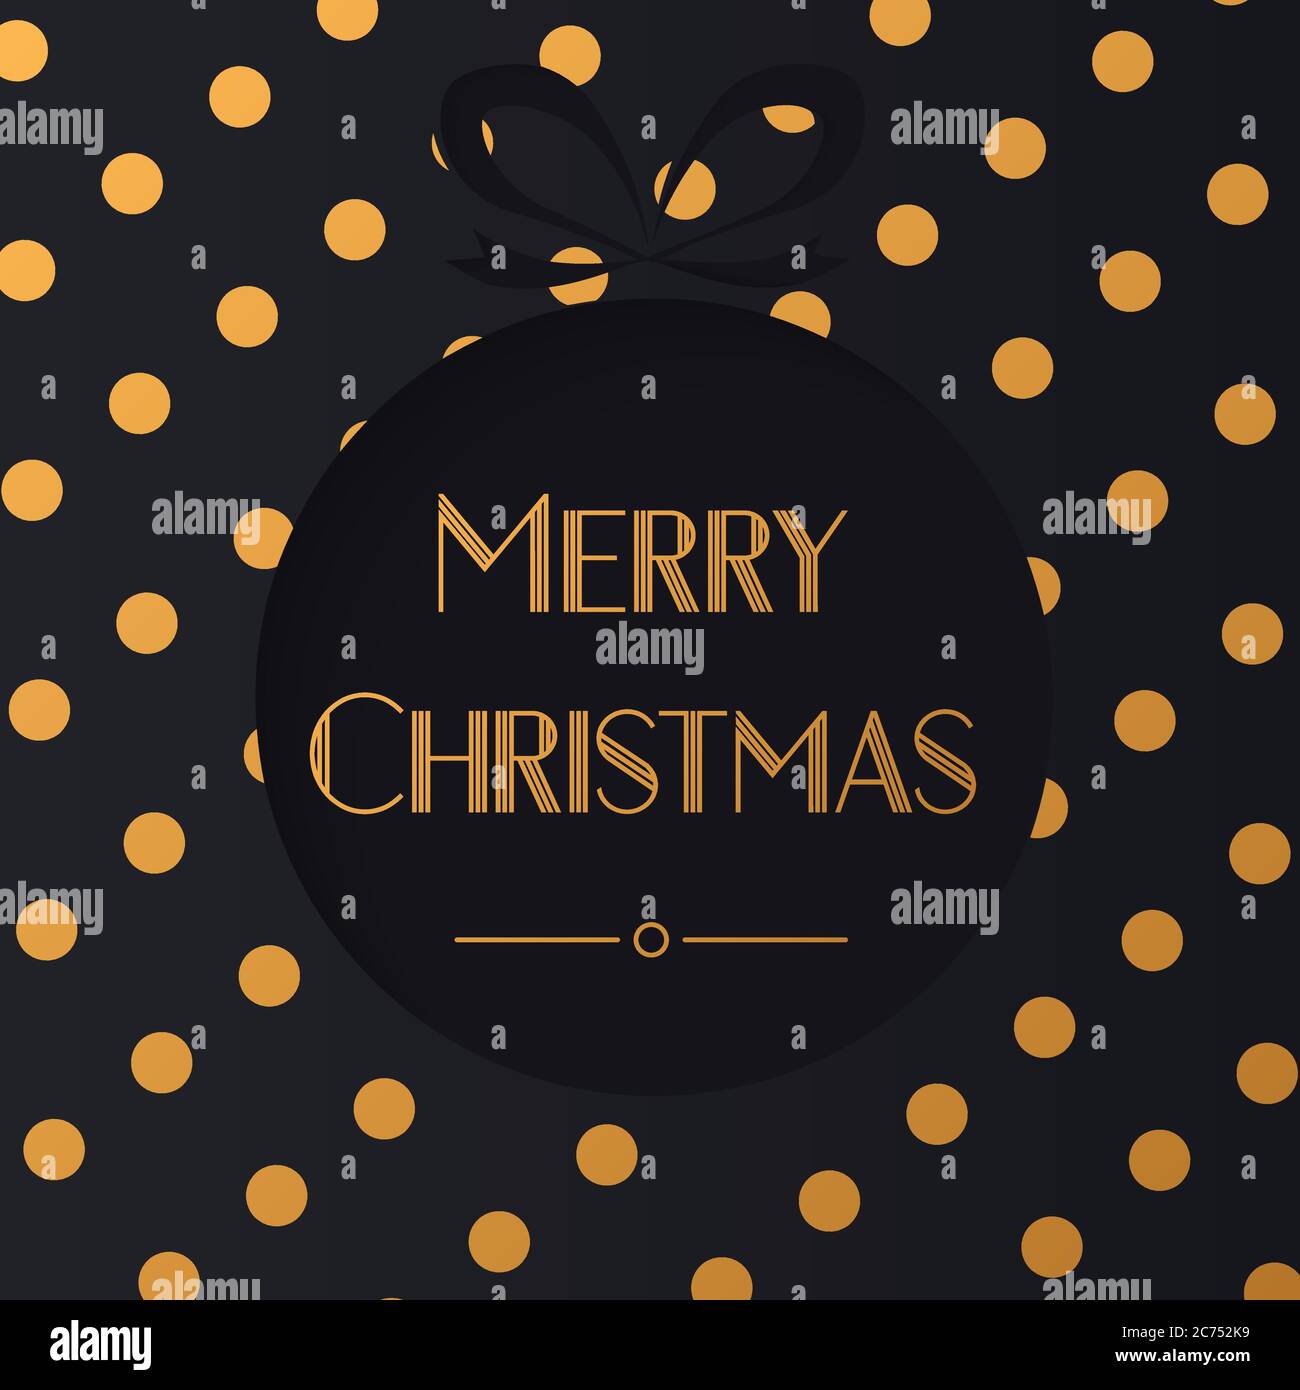 Gold and Black Polka Dots Golden Holiday Dots Holiday Christmas